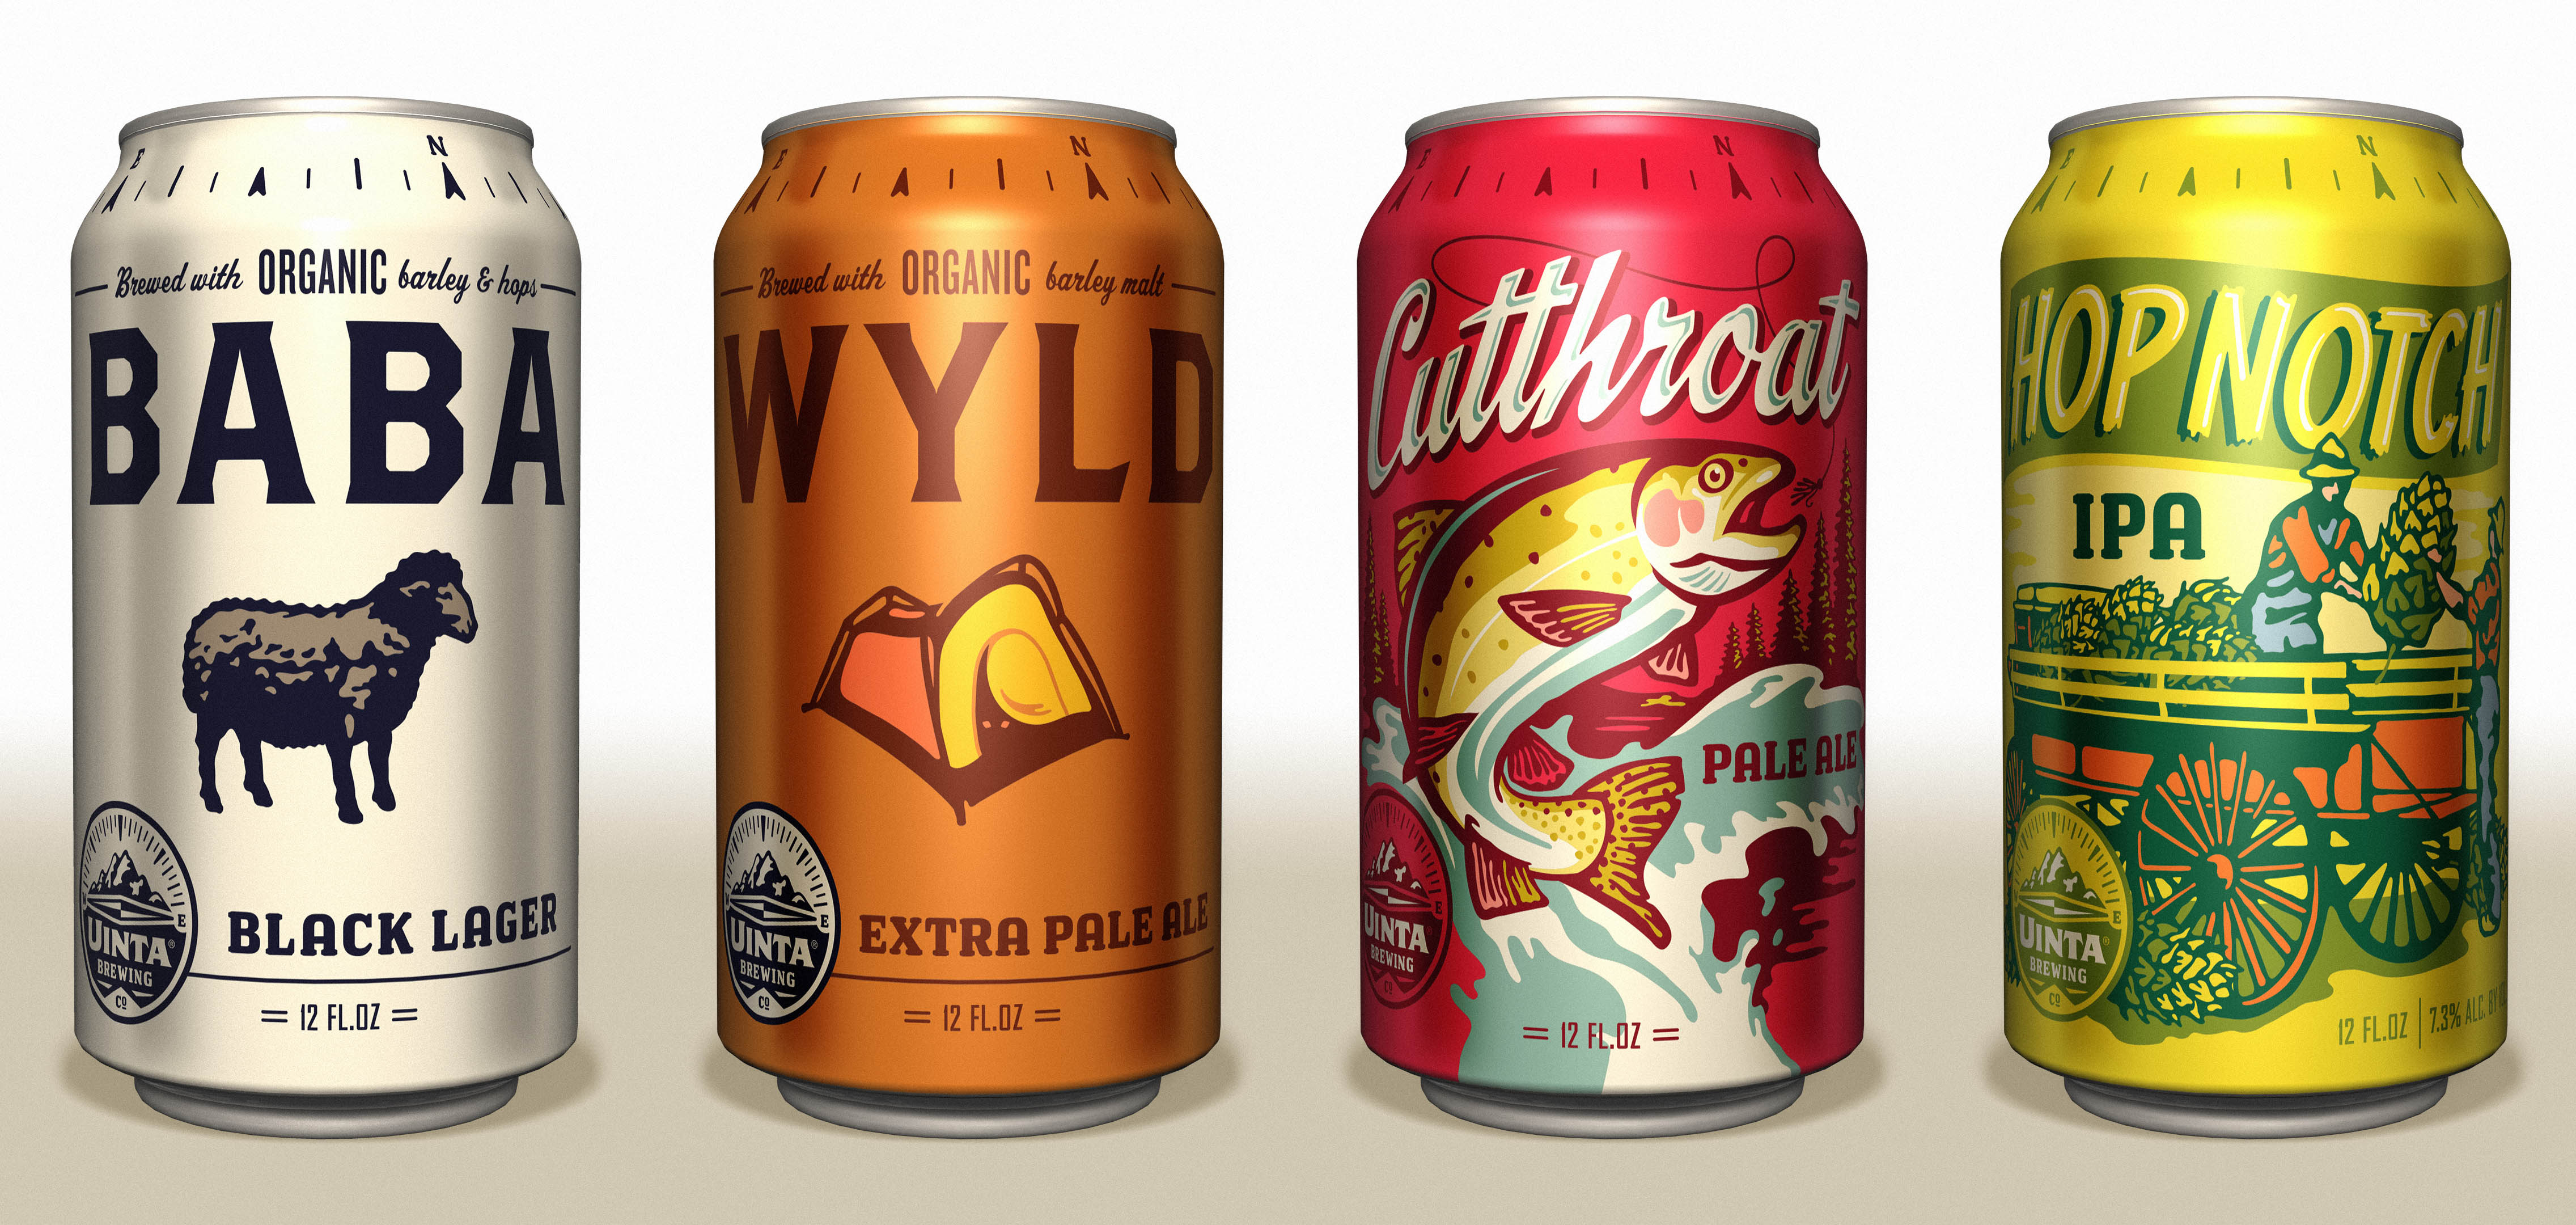 beer can packaging uinta beer cans